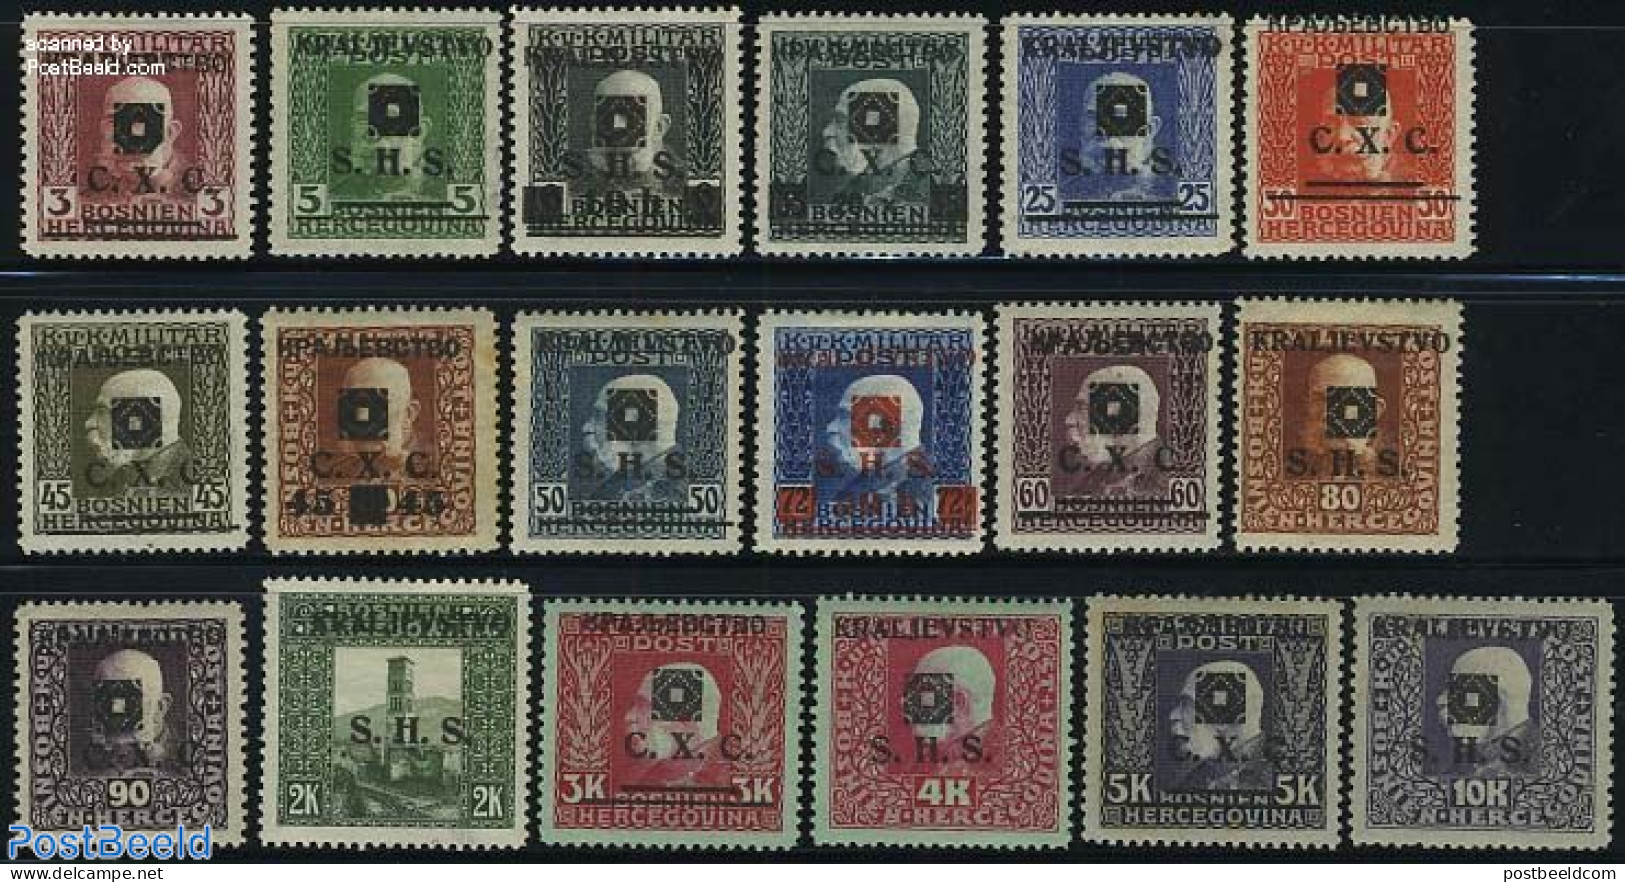 Yugoslavia 1919 Overprints 18v, Unused (hinged) - Unused Stamps